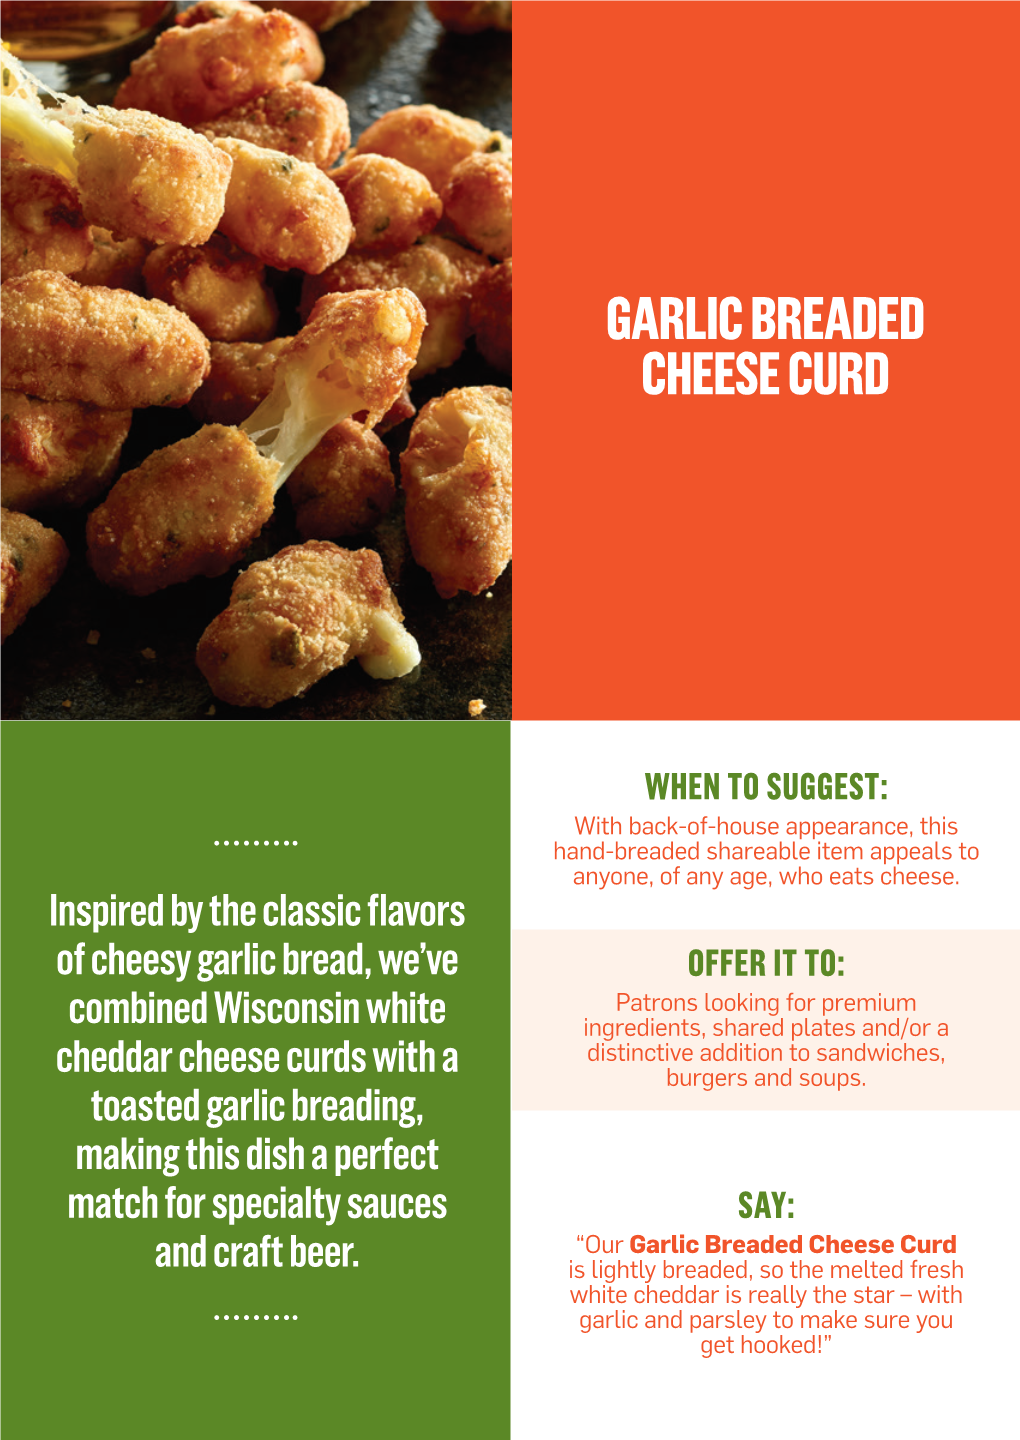 Garlic Breaded Cheese Curd